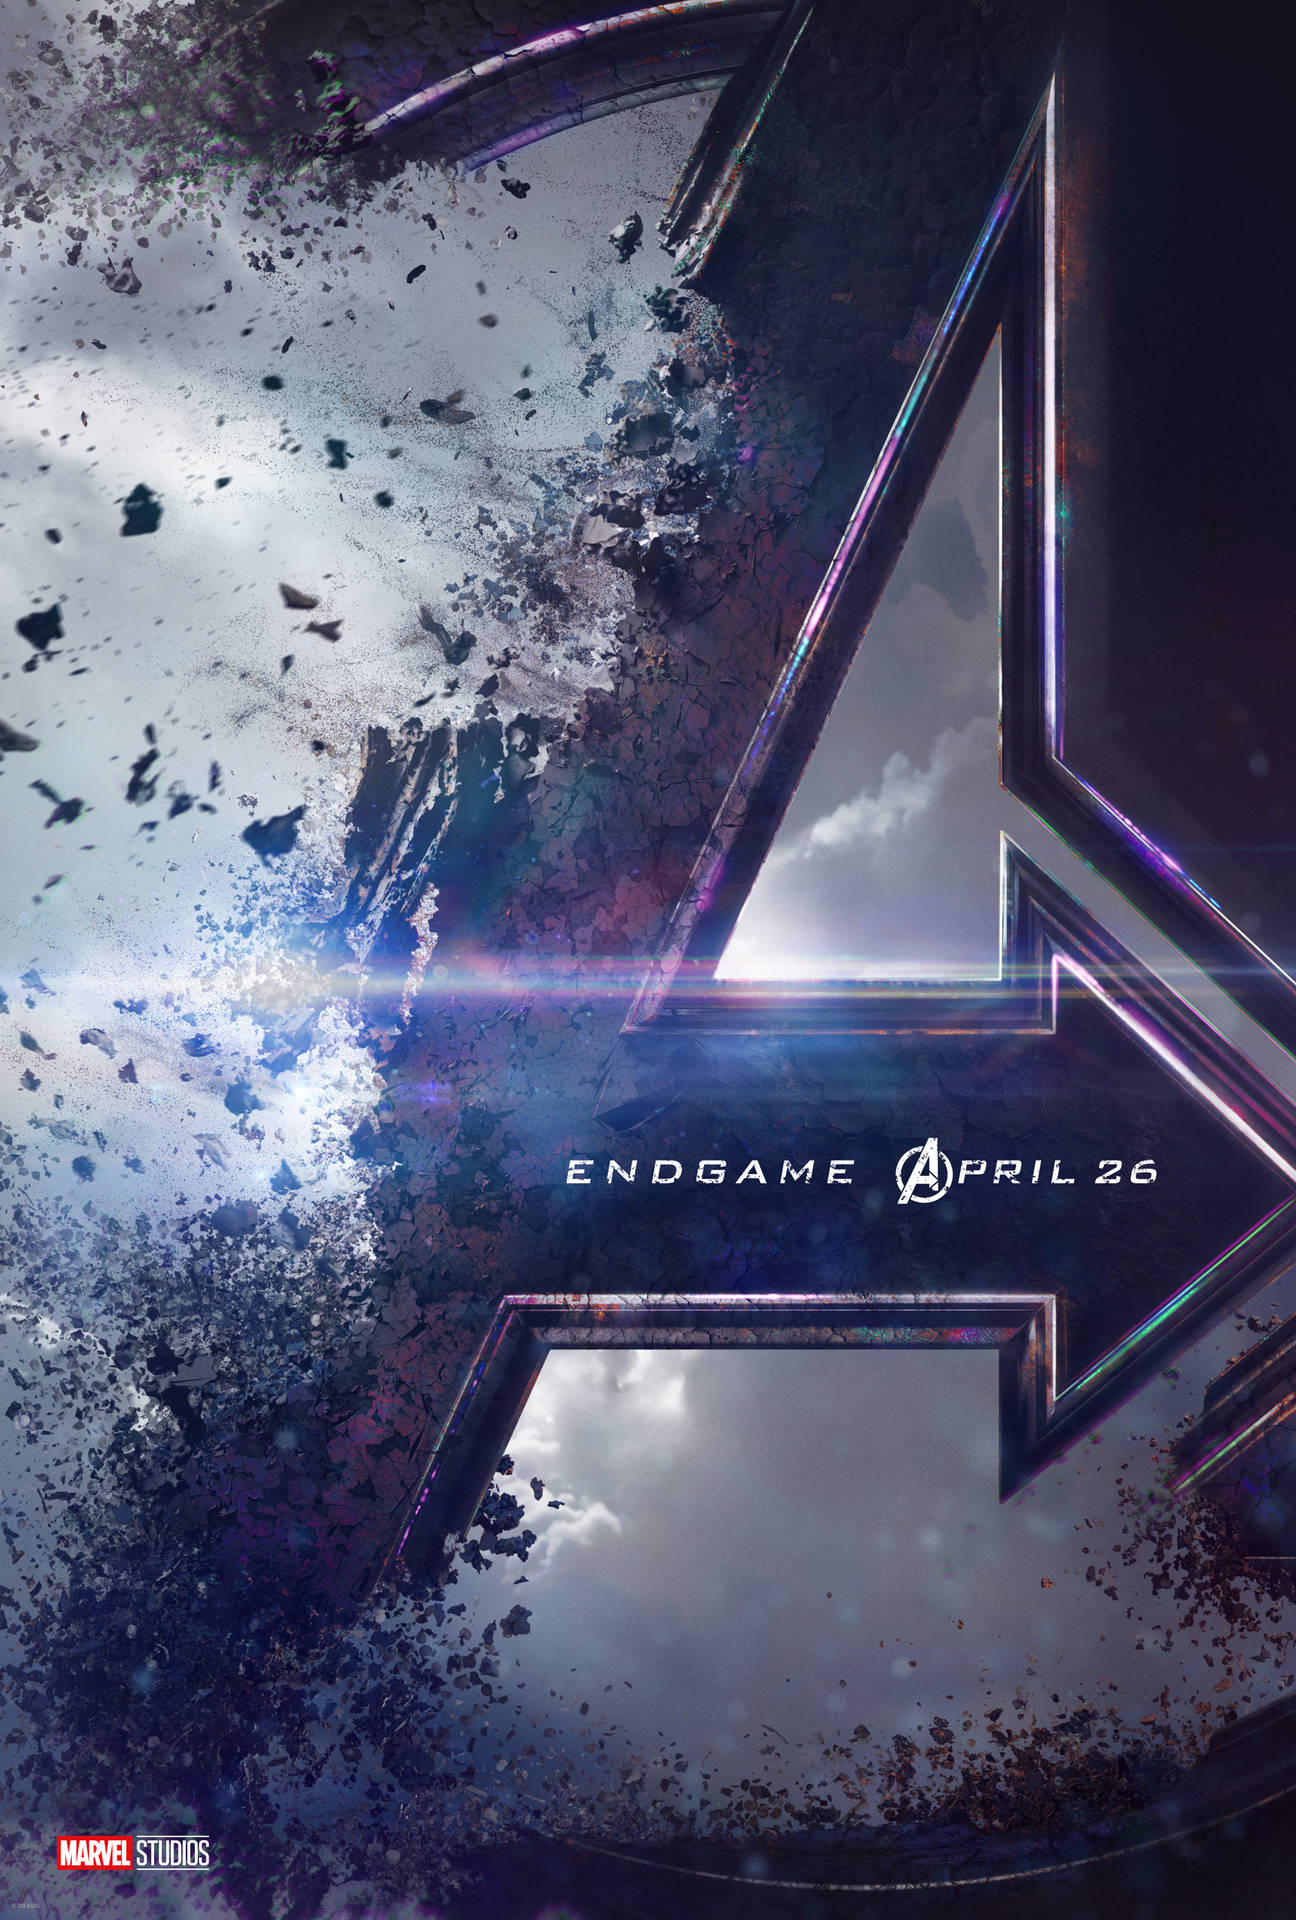 "Avengers, assemble!" Wallpaper